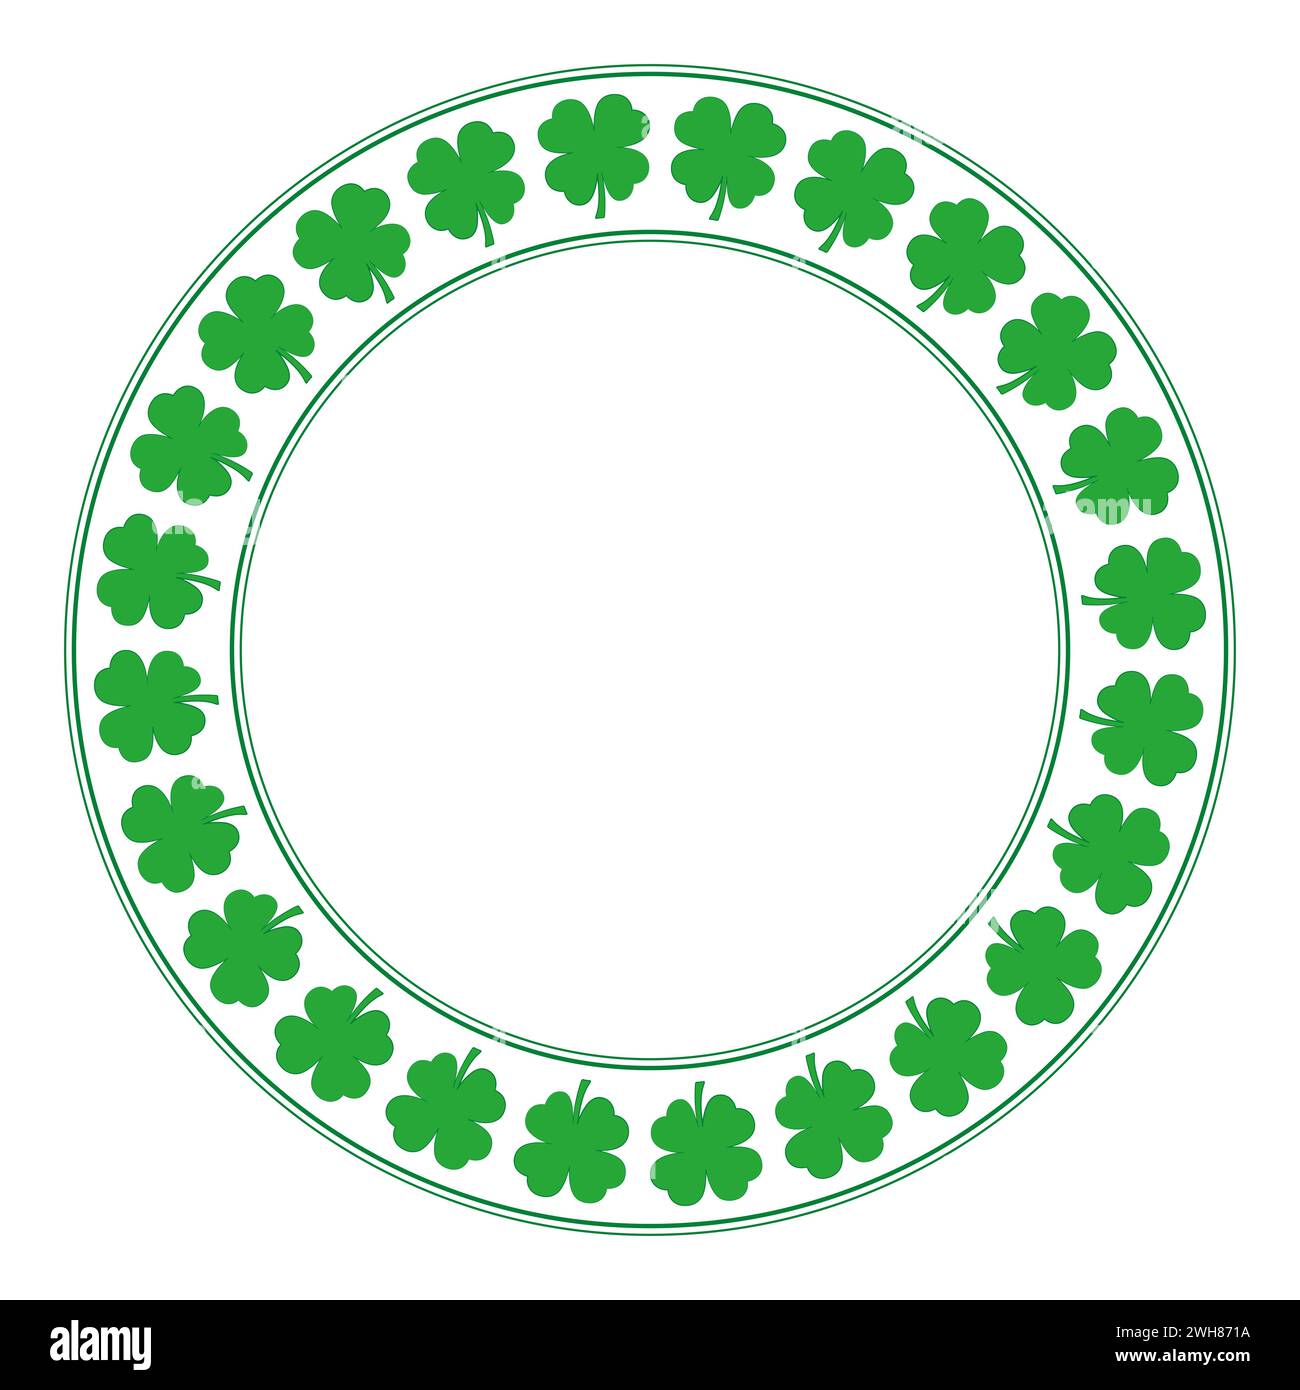 Grüner Kreisrahmen mit Kleeblatt. Dekorative Borte mit kreisförmig angeordneten vierblättrigen Kleeblättern. Sie gelten als Glück. Stockfoto